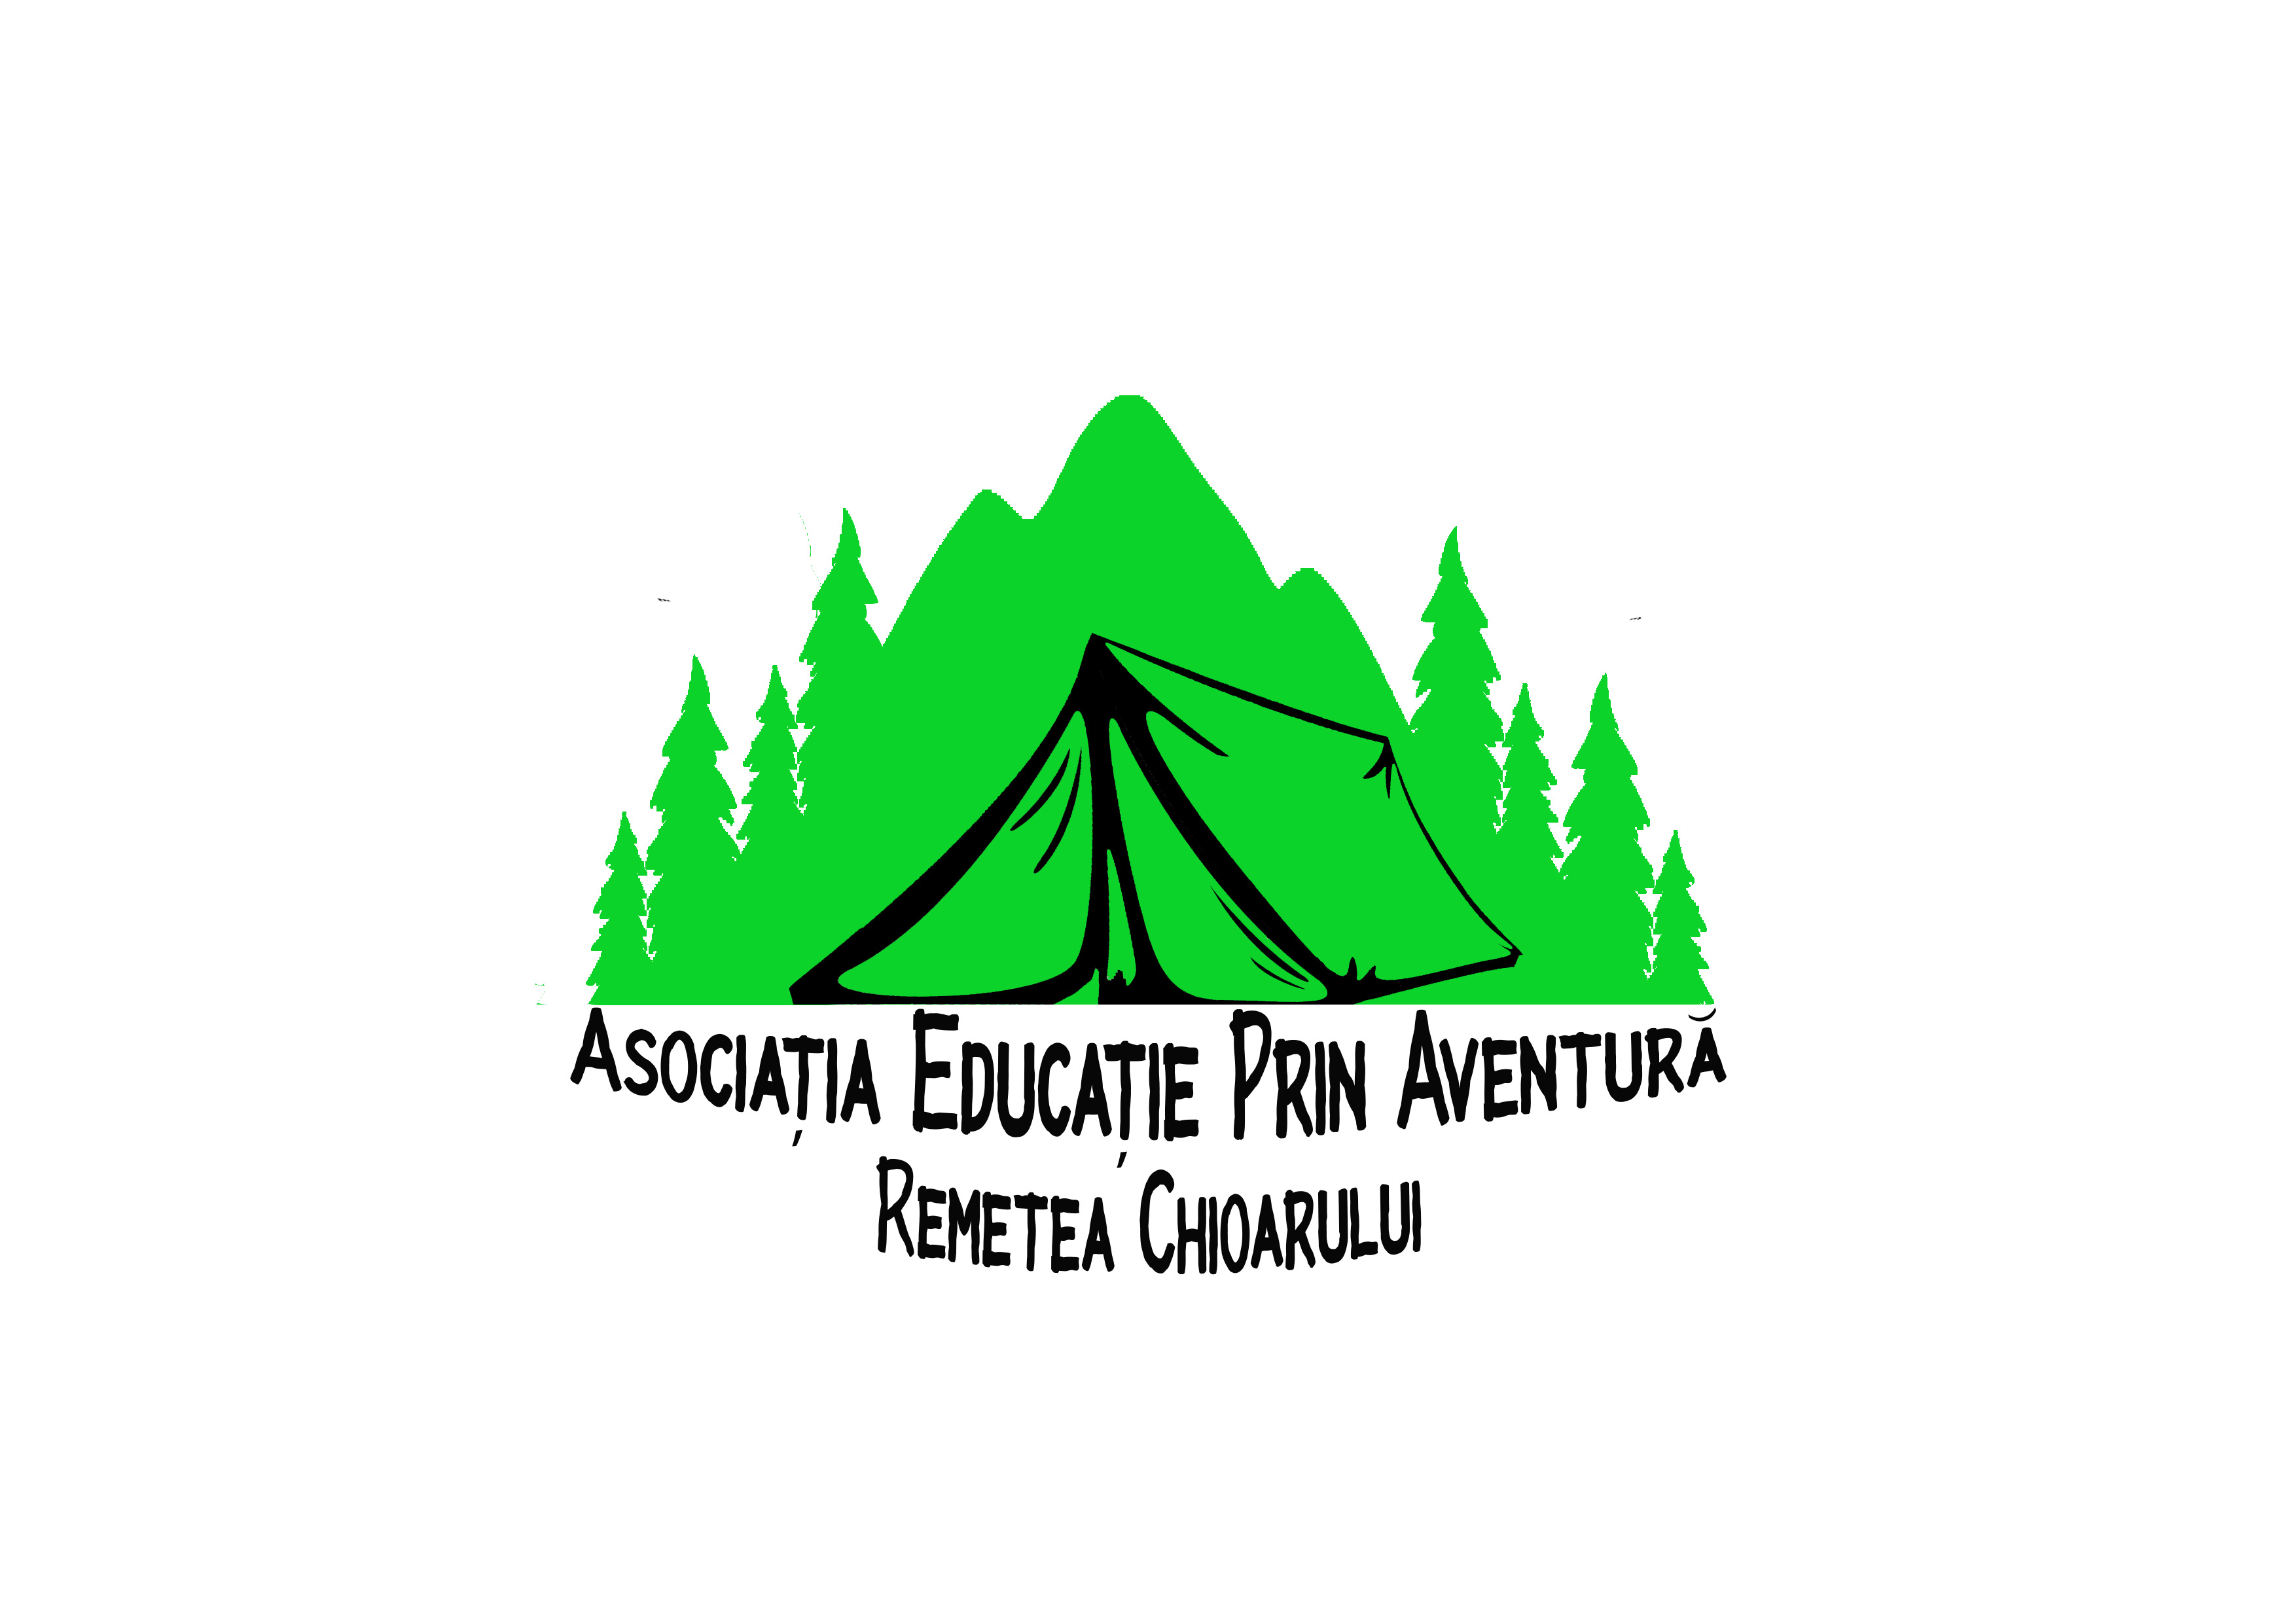 Asociatia Educatie Prin Aventura Remetea Chioarului logo